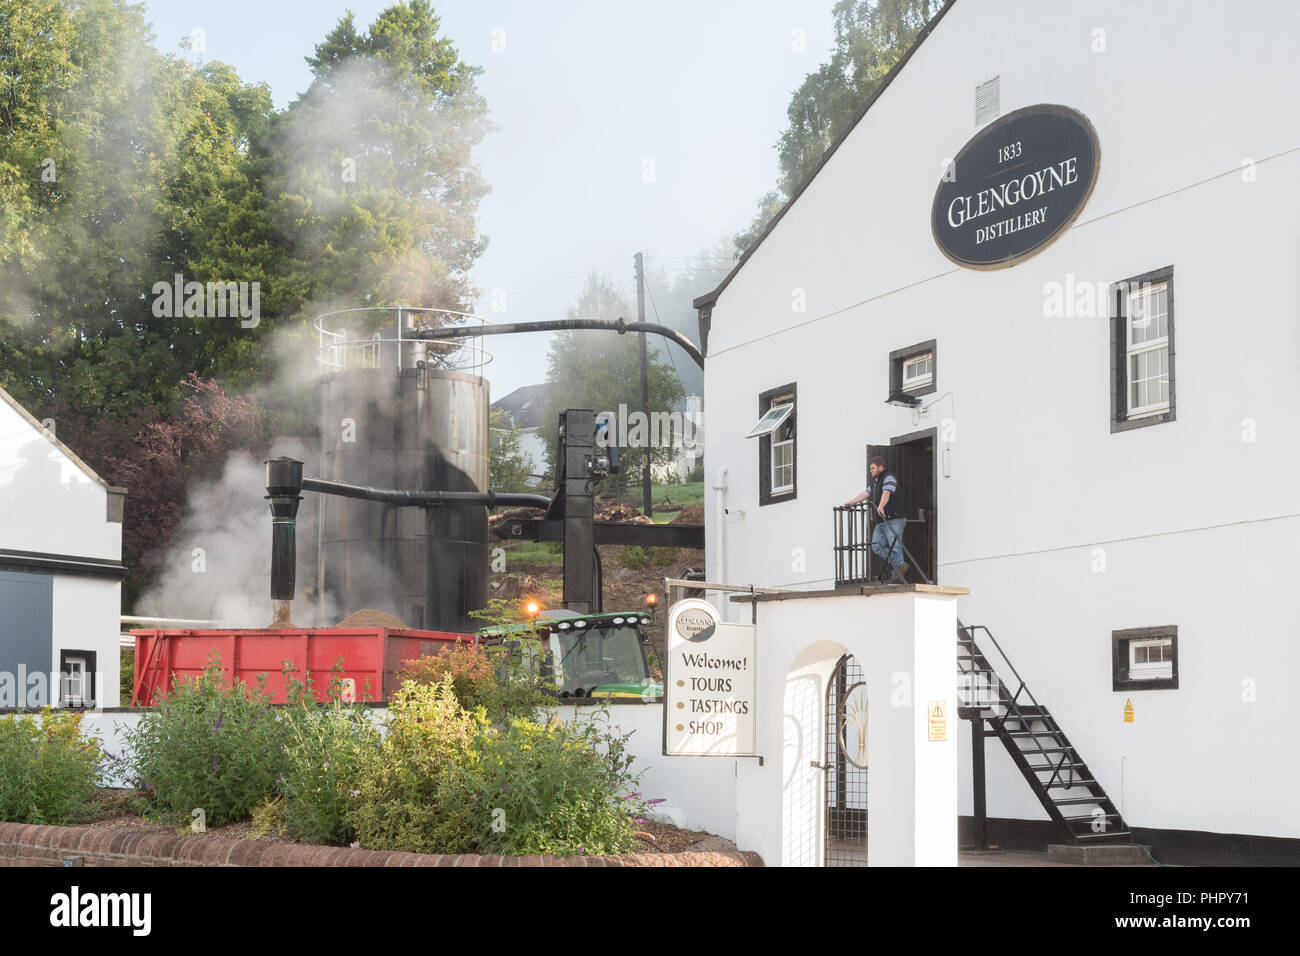 Dampfende Biertreber - ein Produkt der Whisky wird nach "veraschung" - in einen Anhänger an Glengoyne Distillery, Schottland, UK gegossen Stockfoto